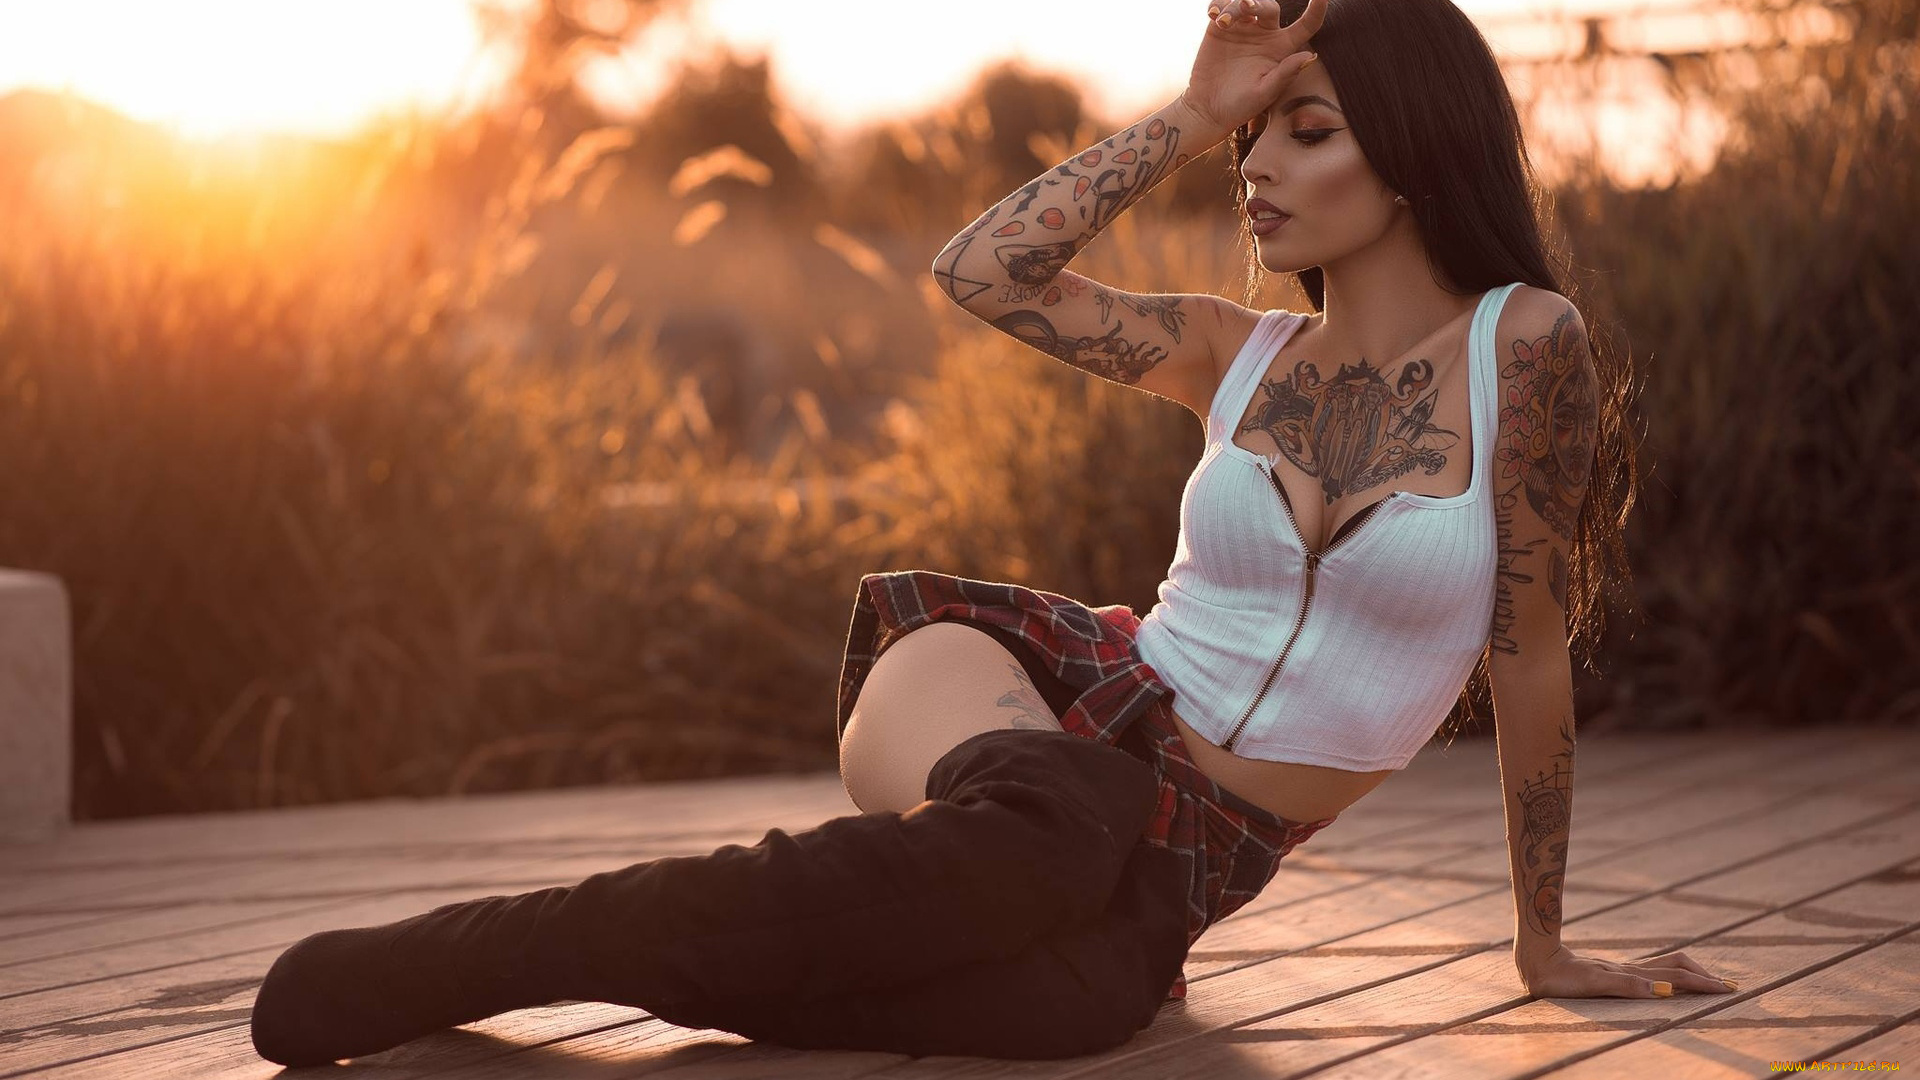 Сексуальные девушки с татуировками 76 фото